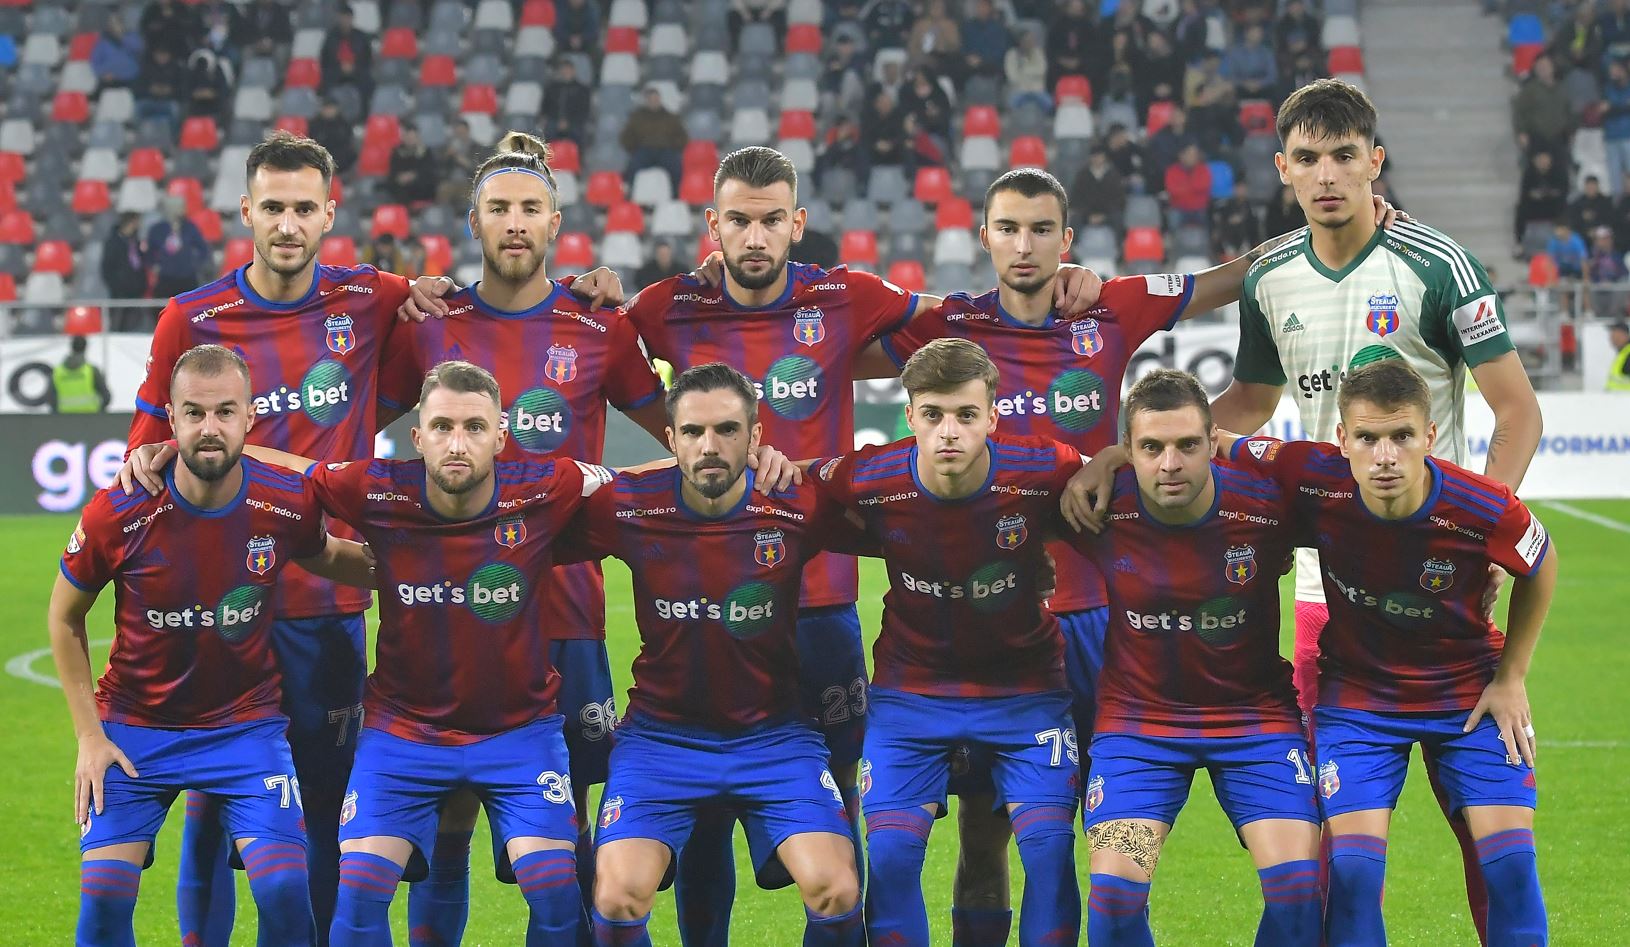 Calea facilă prin care CSA Steaua poate promova în Liga 1. Vasile Dîncu: “Asta e soluția”